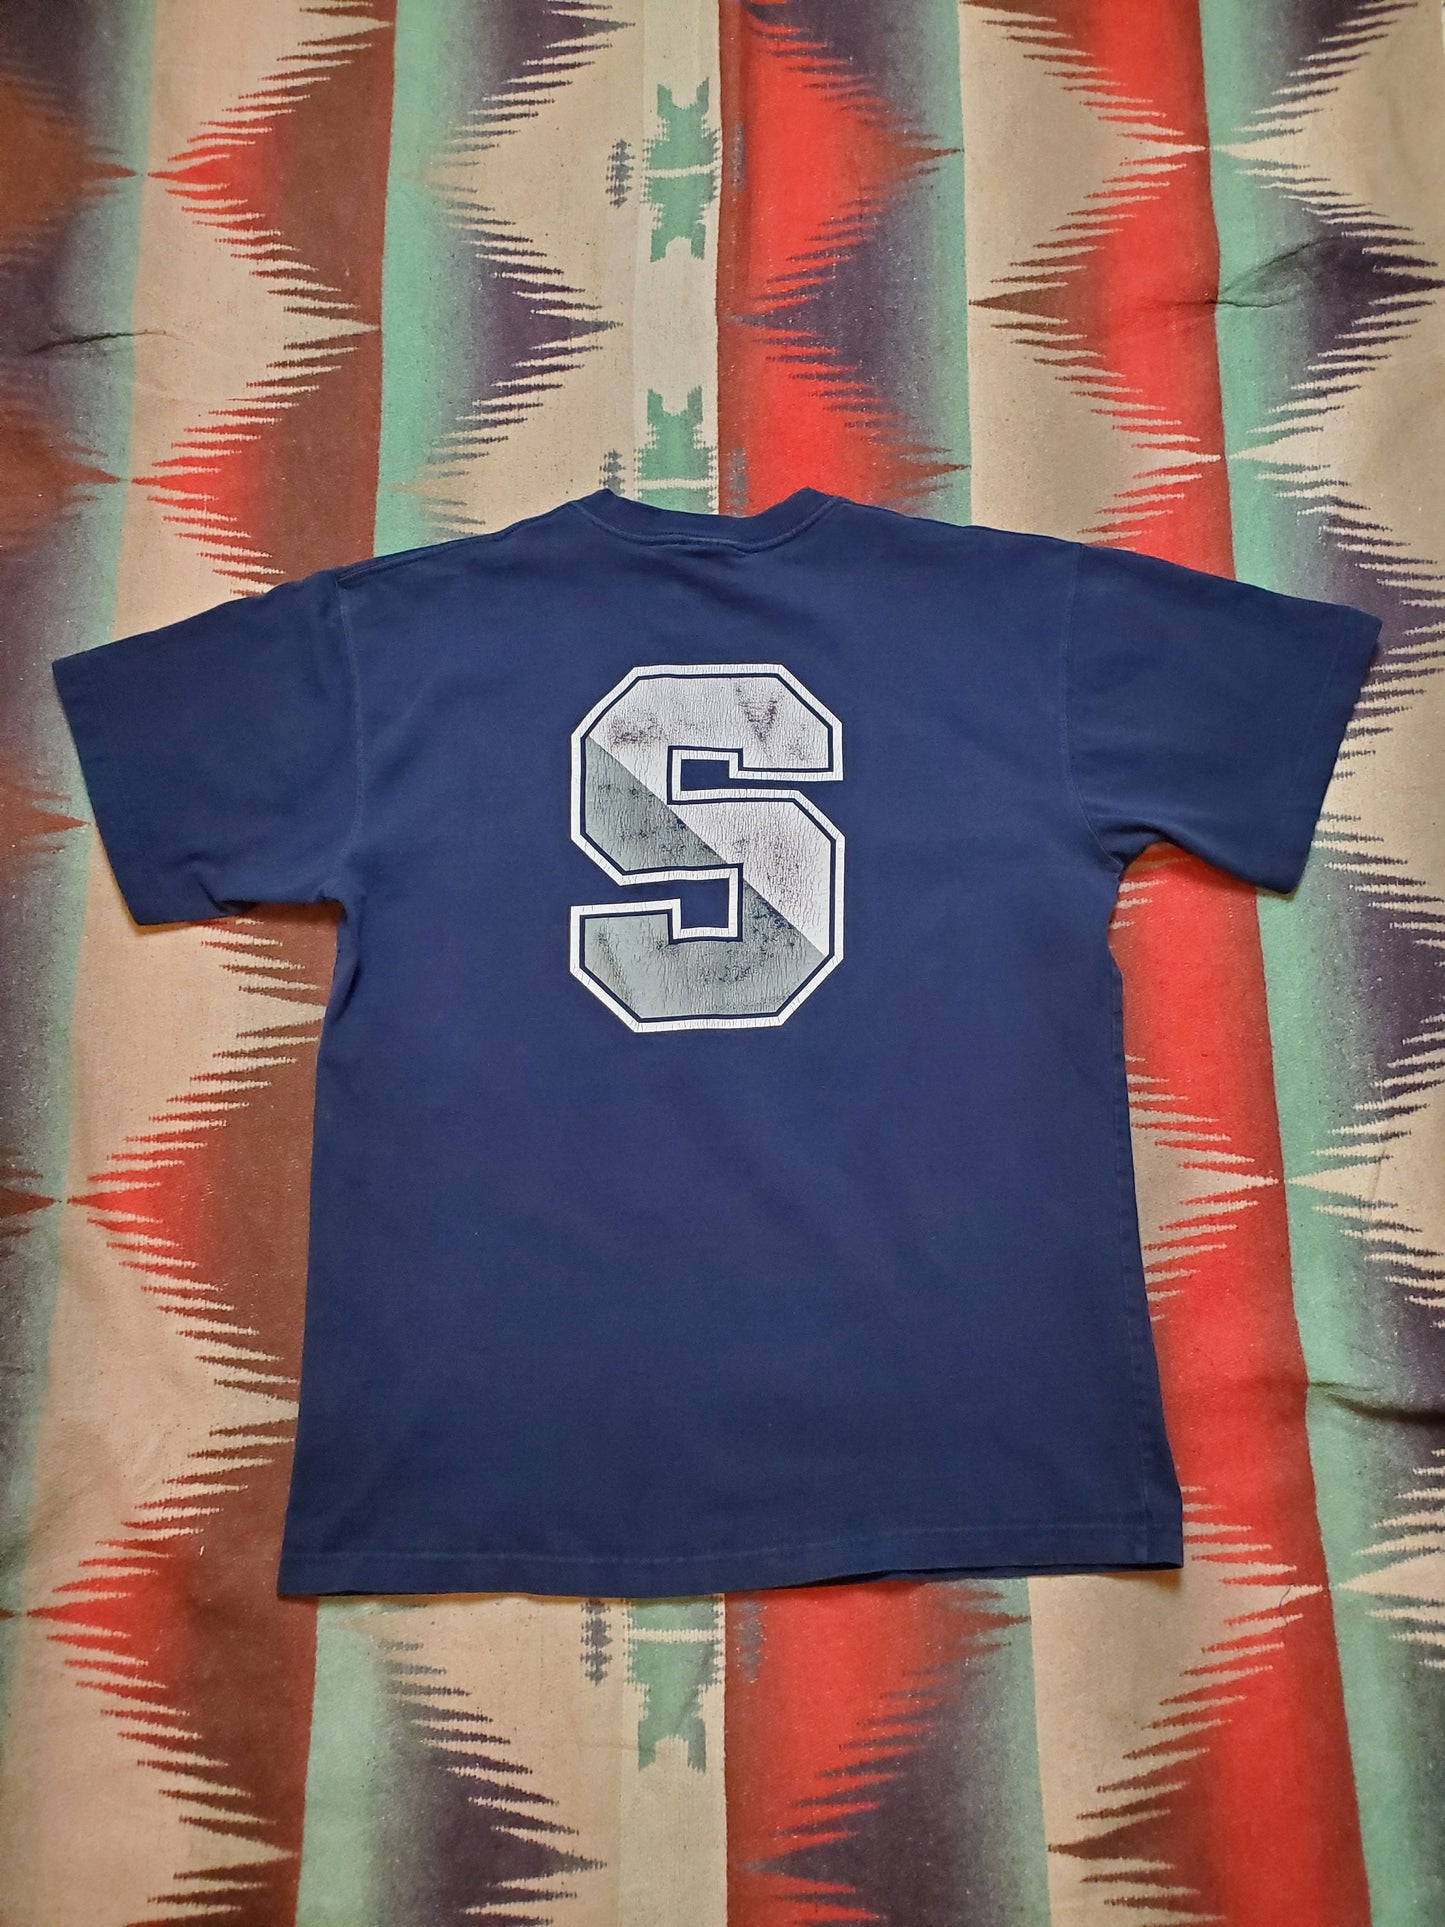 1990s/2000s Penn State University Oarsman T-Shirt Size L